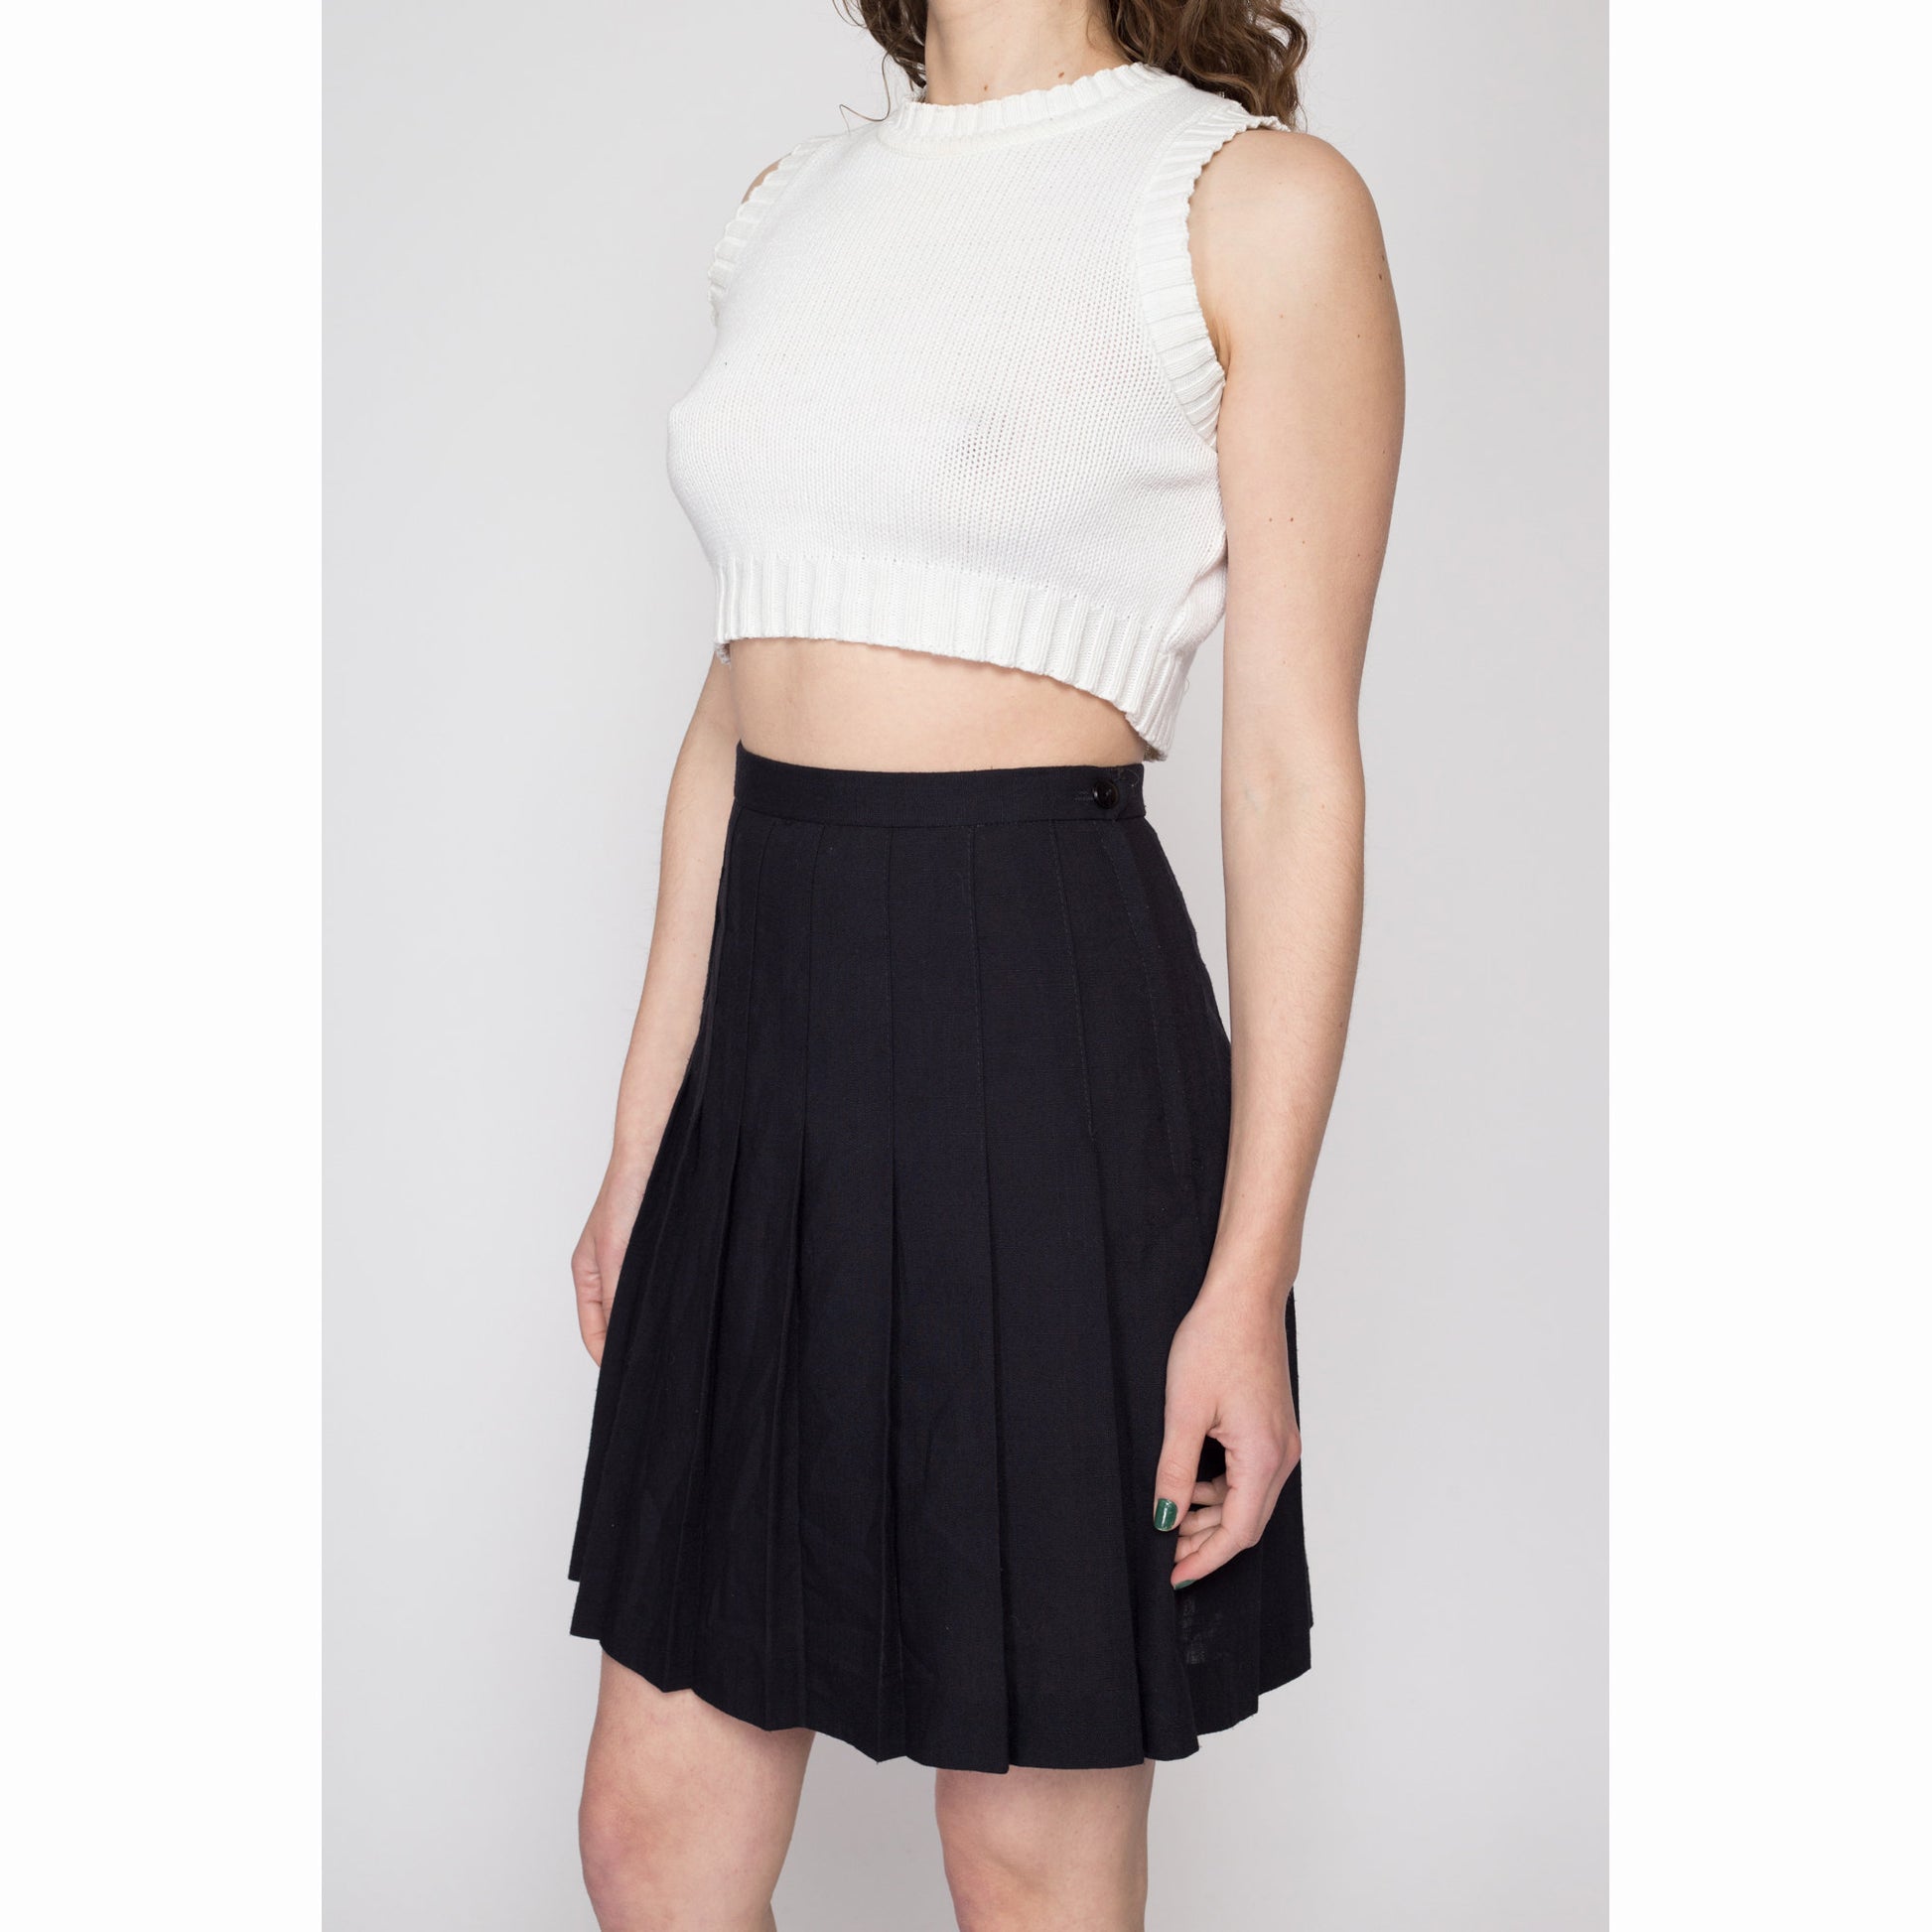 Small 70s Black Pleated Mini Skirt 26.5 – Flying Apple Vintage